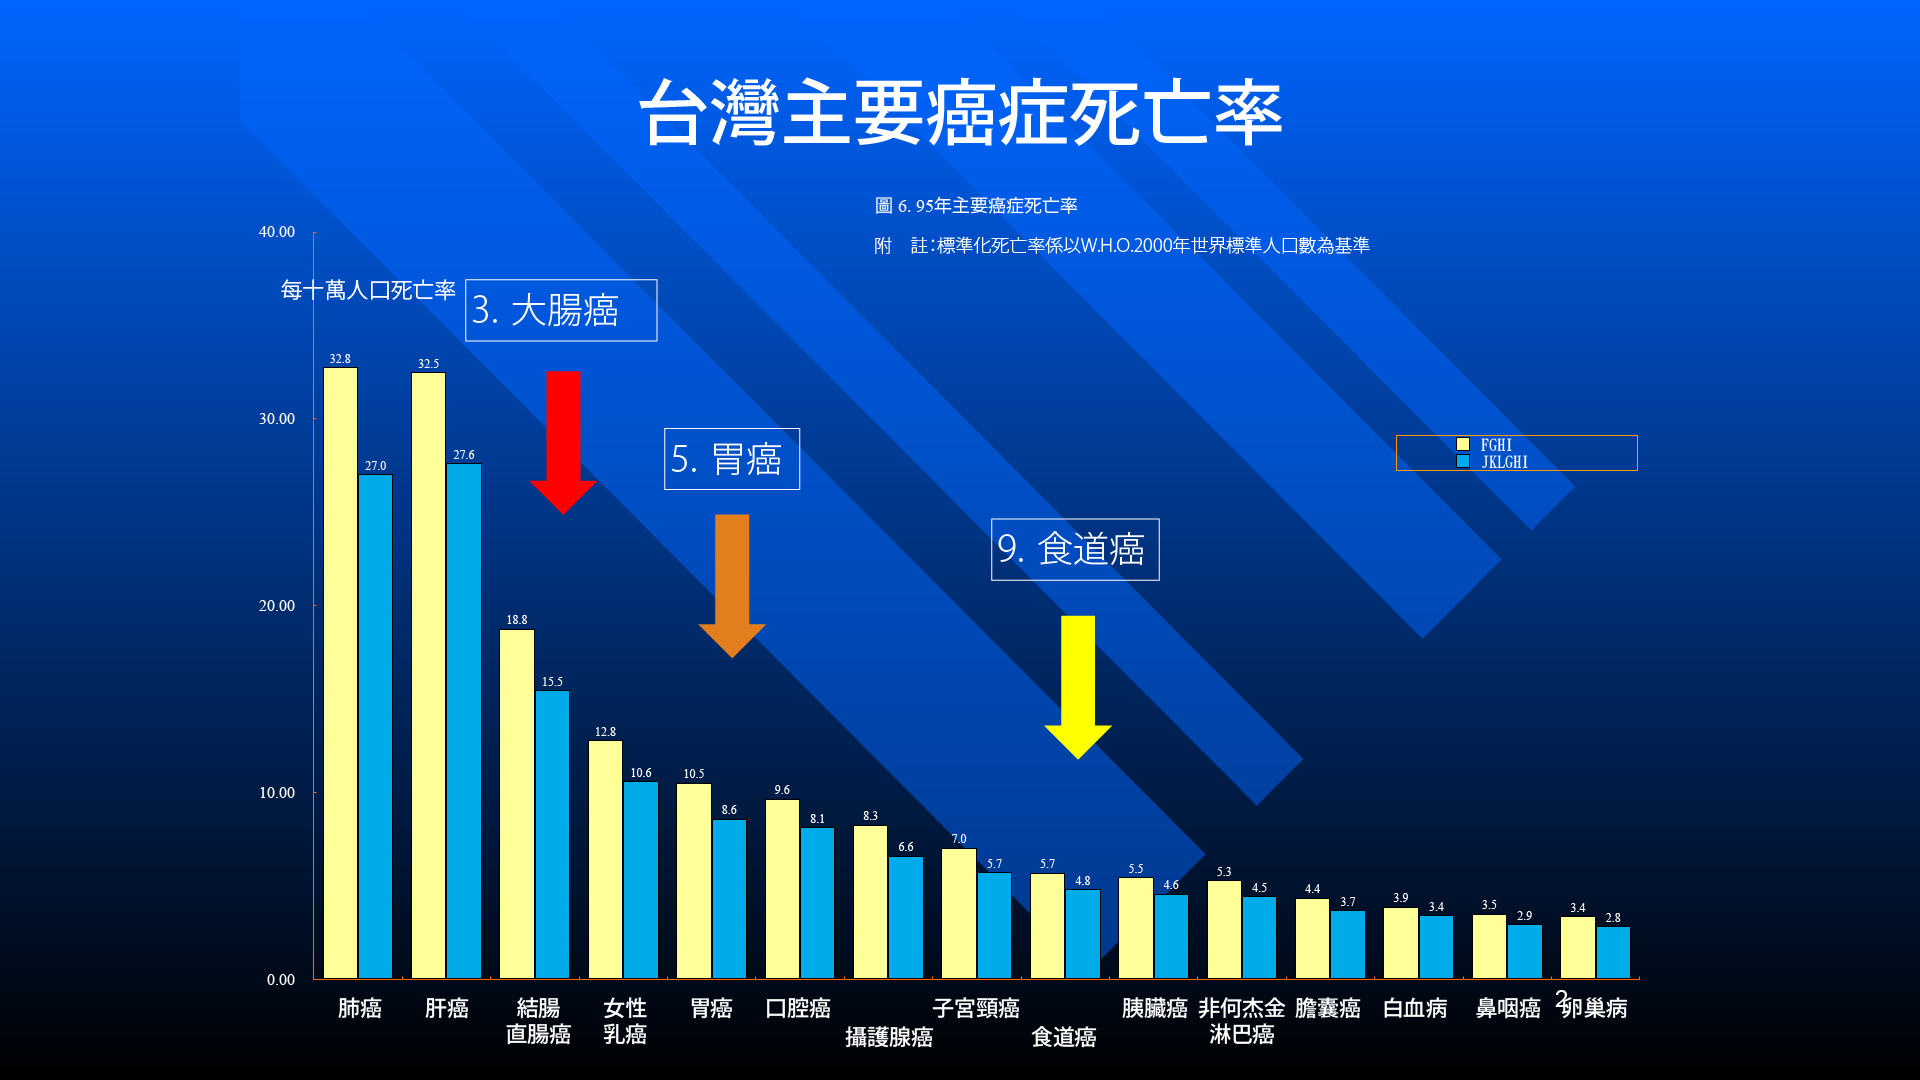 過往的資料(圖表) - 臺灣主要癌症死亡率與全世界大腸癌的發生率